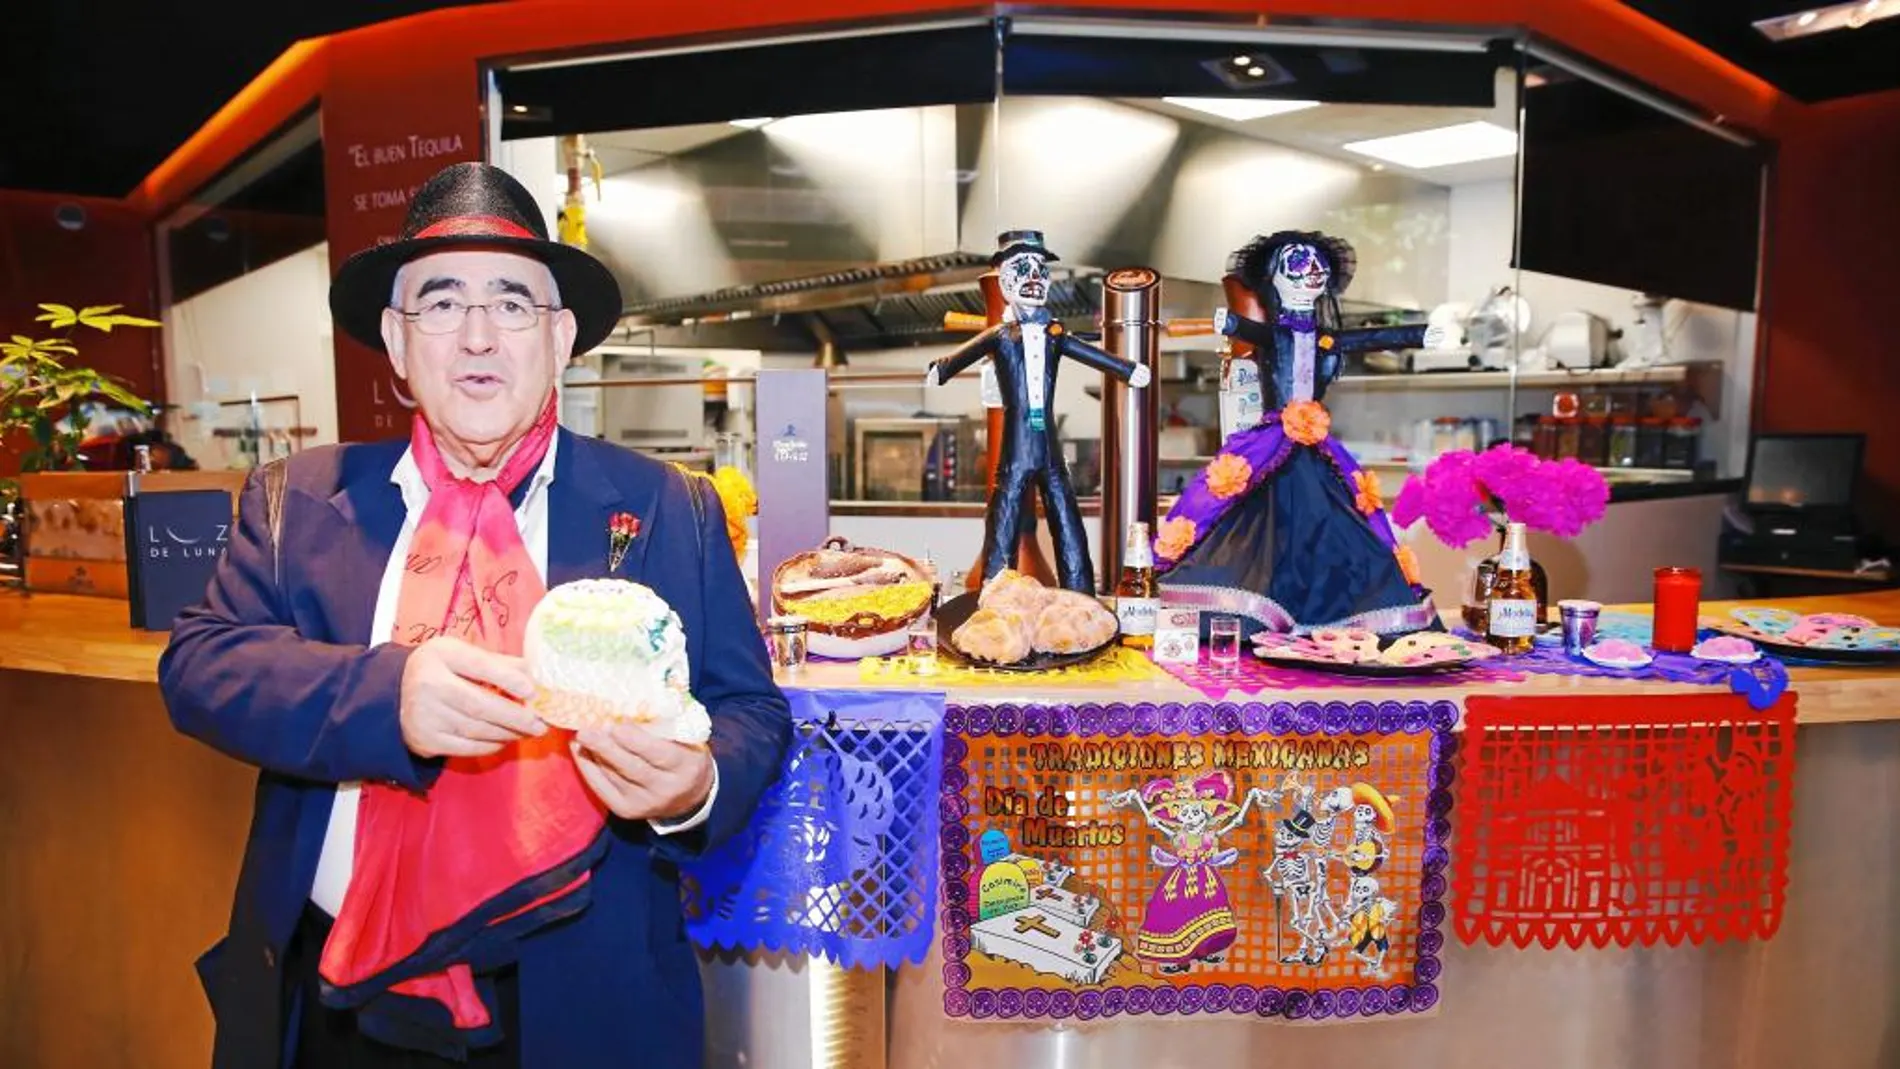 El chef Abrahám García acaba de abrir Luz de Luna y lo ha decorado con altares mexicanos para la noche más terrorífica